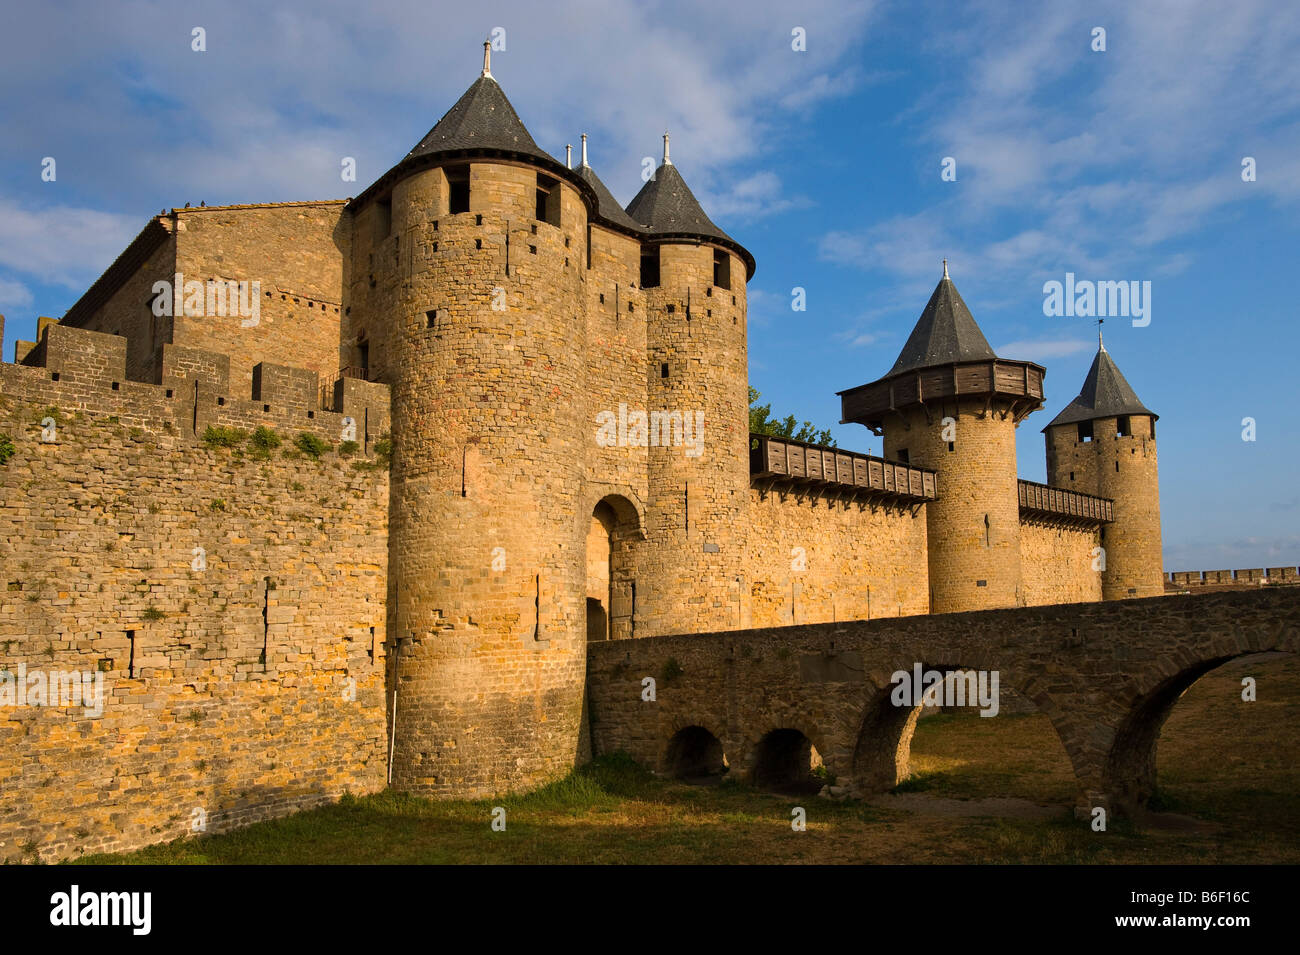 Narbonnaise Port, ville médiévale, Carcassonne, France, Europe, Languedoc-Roussillion Banque D'Images